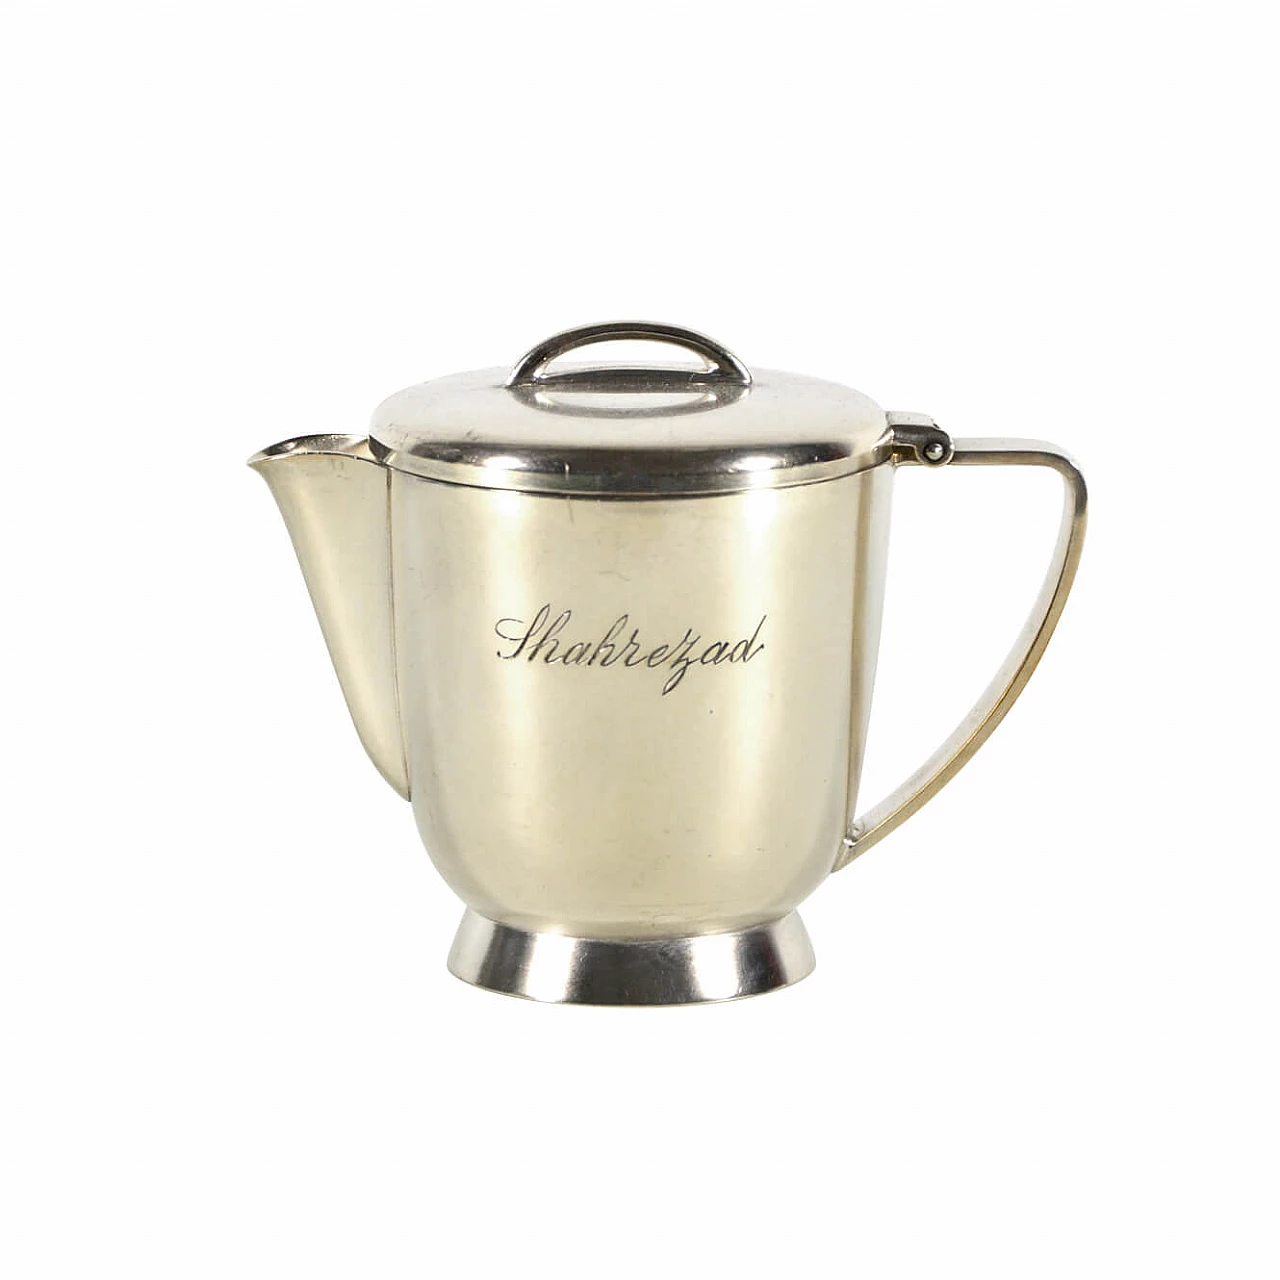 Gio Ponti, silver alpacca teapot for Calderoni, 1950s 1090782